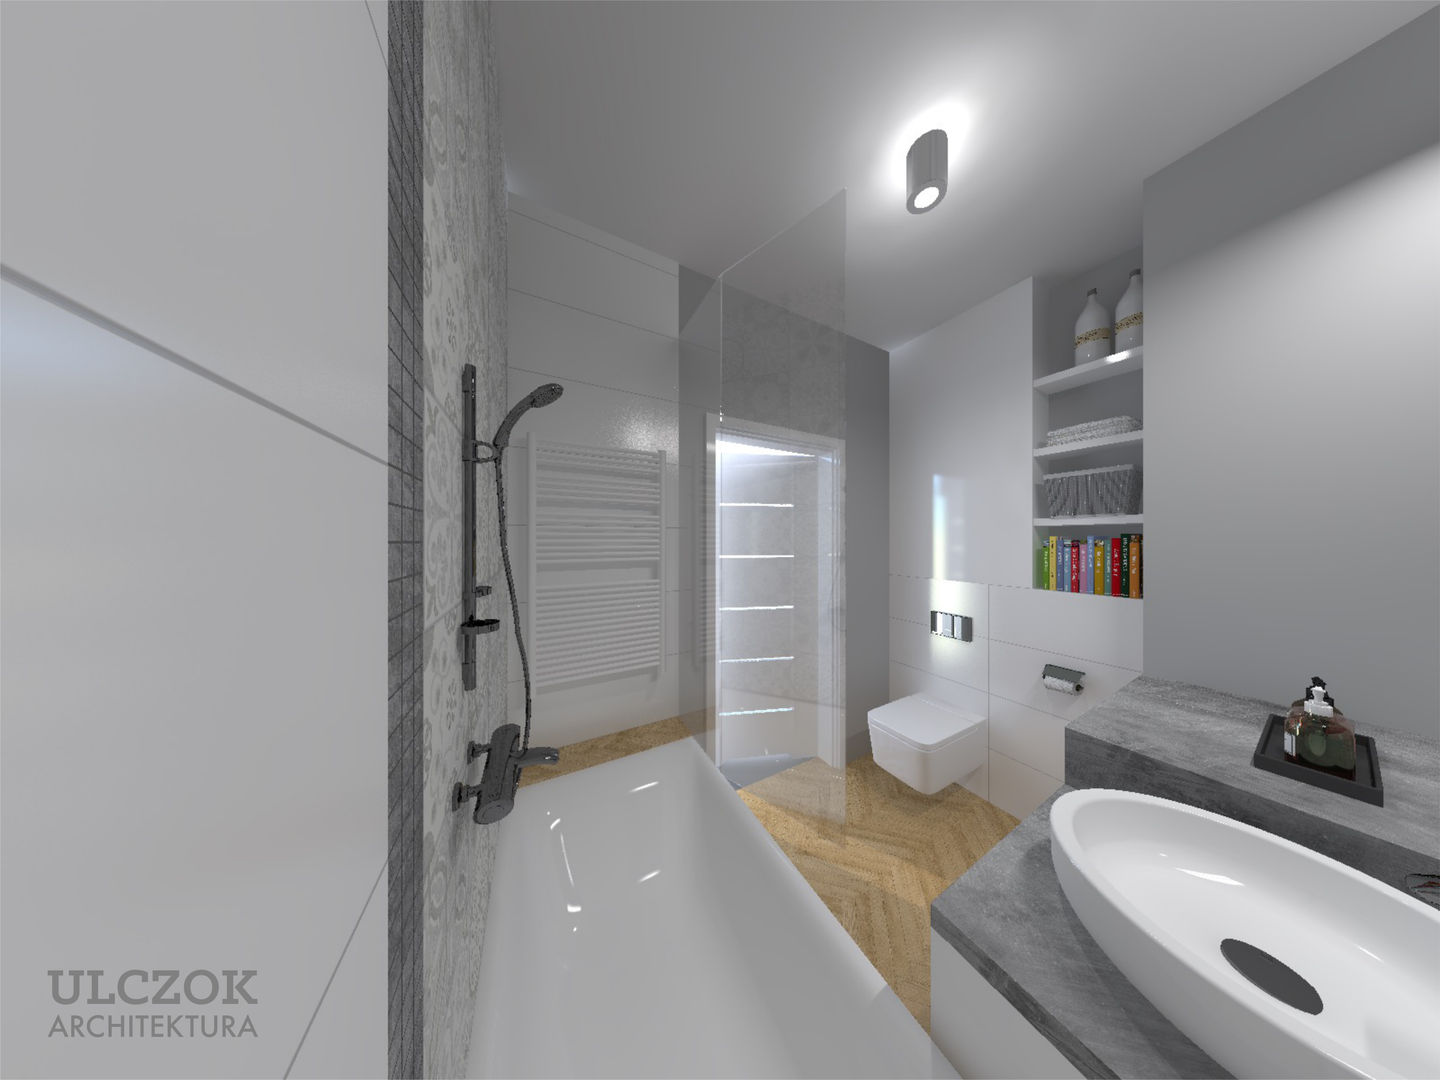 Projekt małej łazienki, Ulczok Architektura Ulczok Architektura Bagno moderno